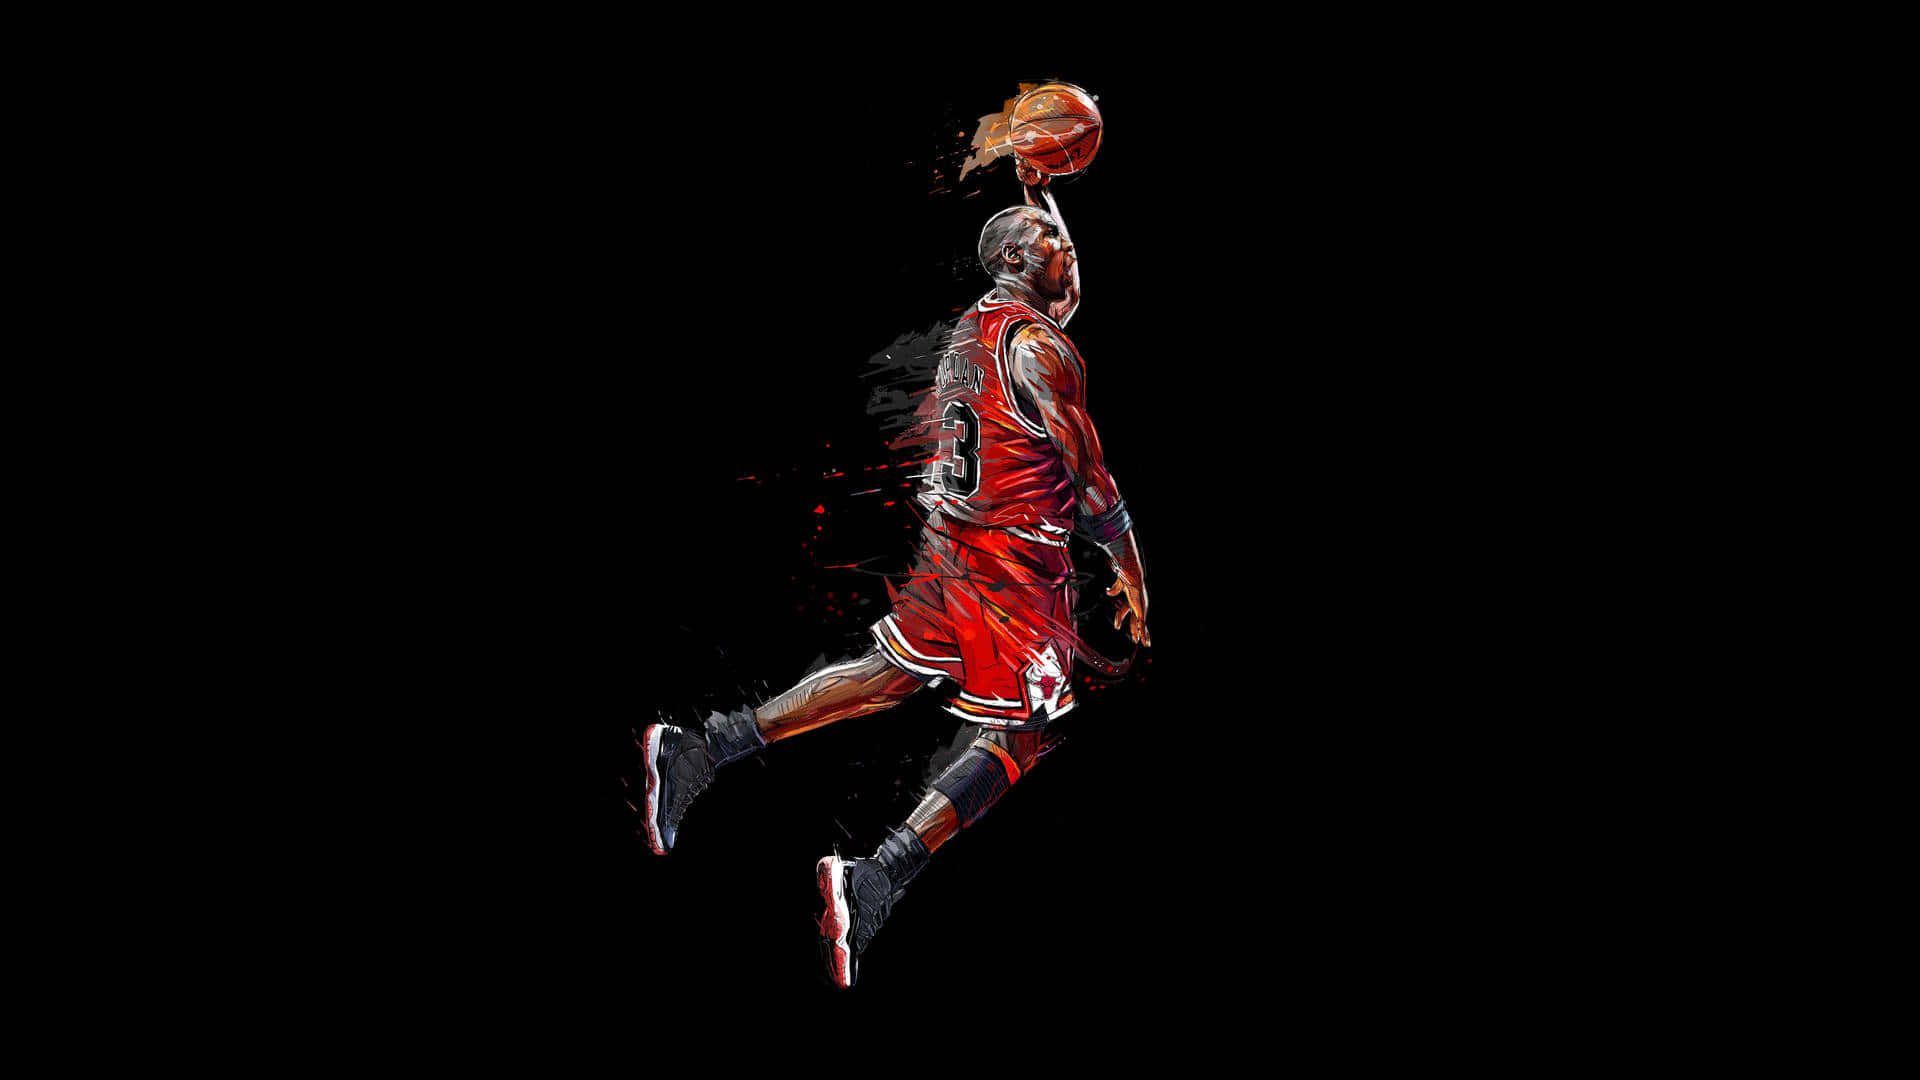 Michael Jordan's Black Basketball Aesthetic Dunking Background